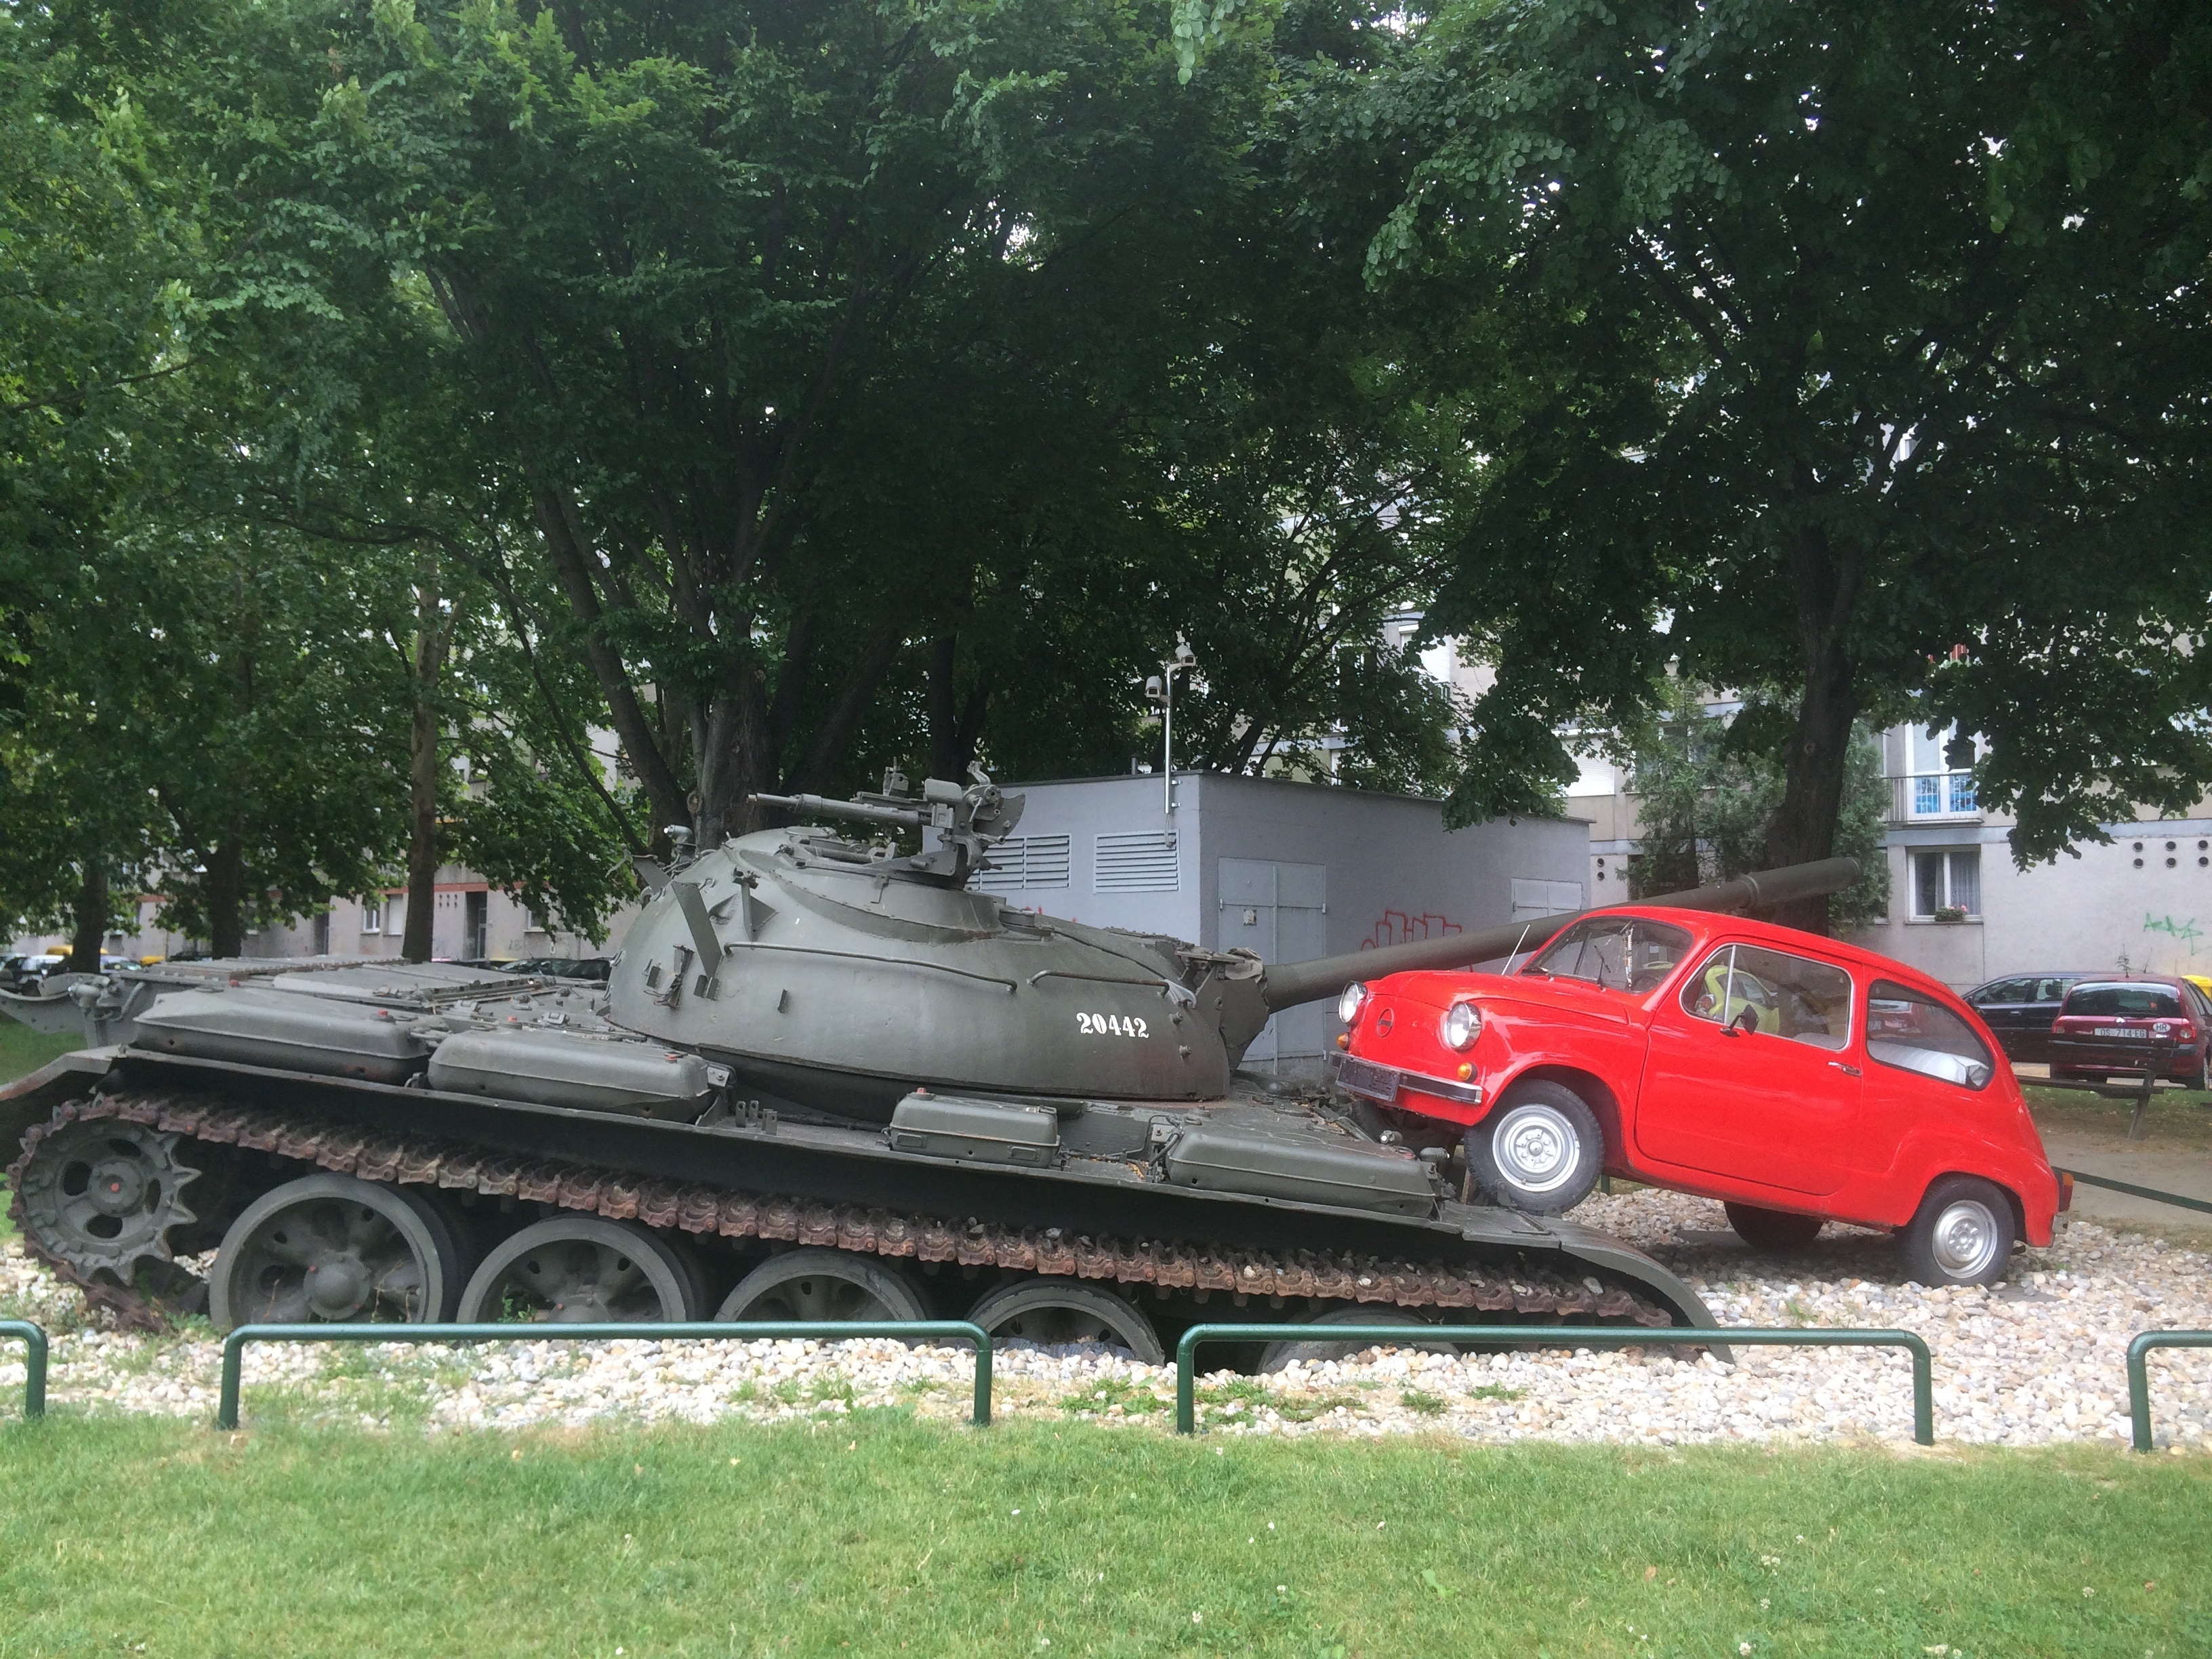 black battle tank beside red car